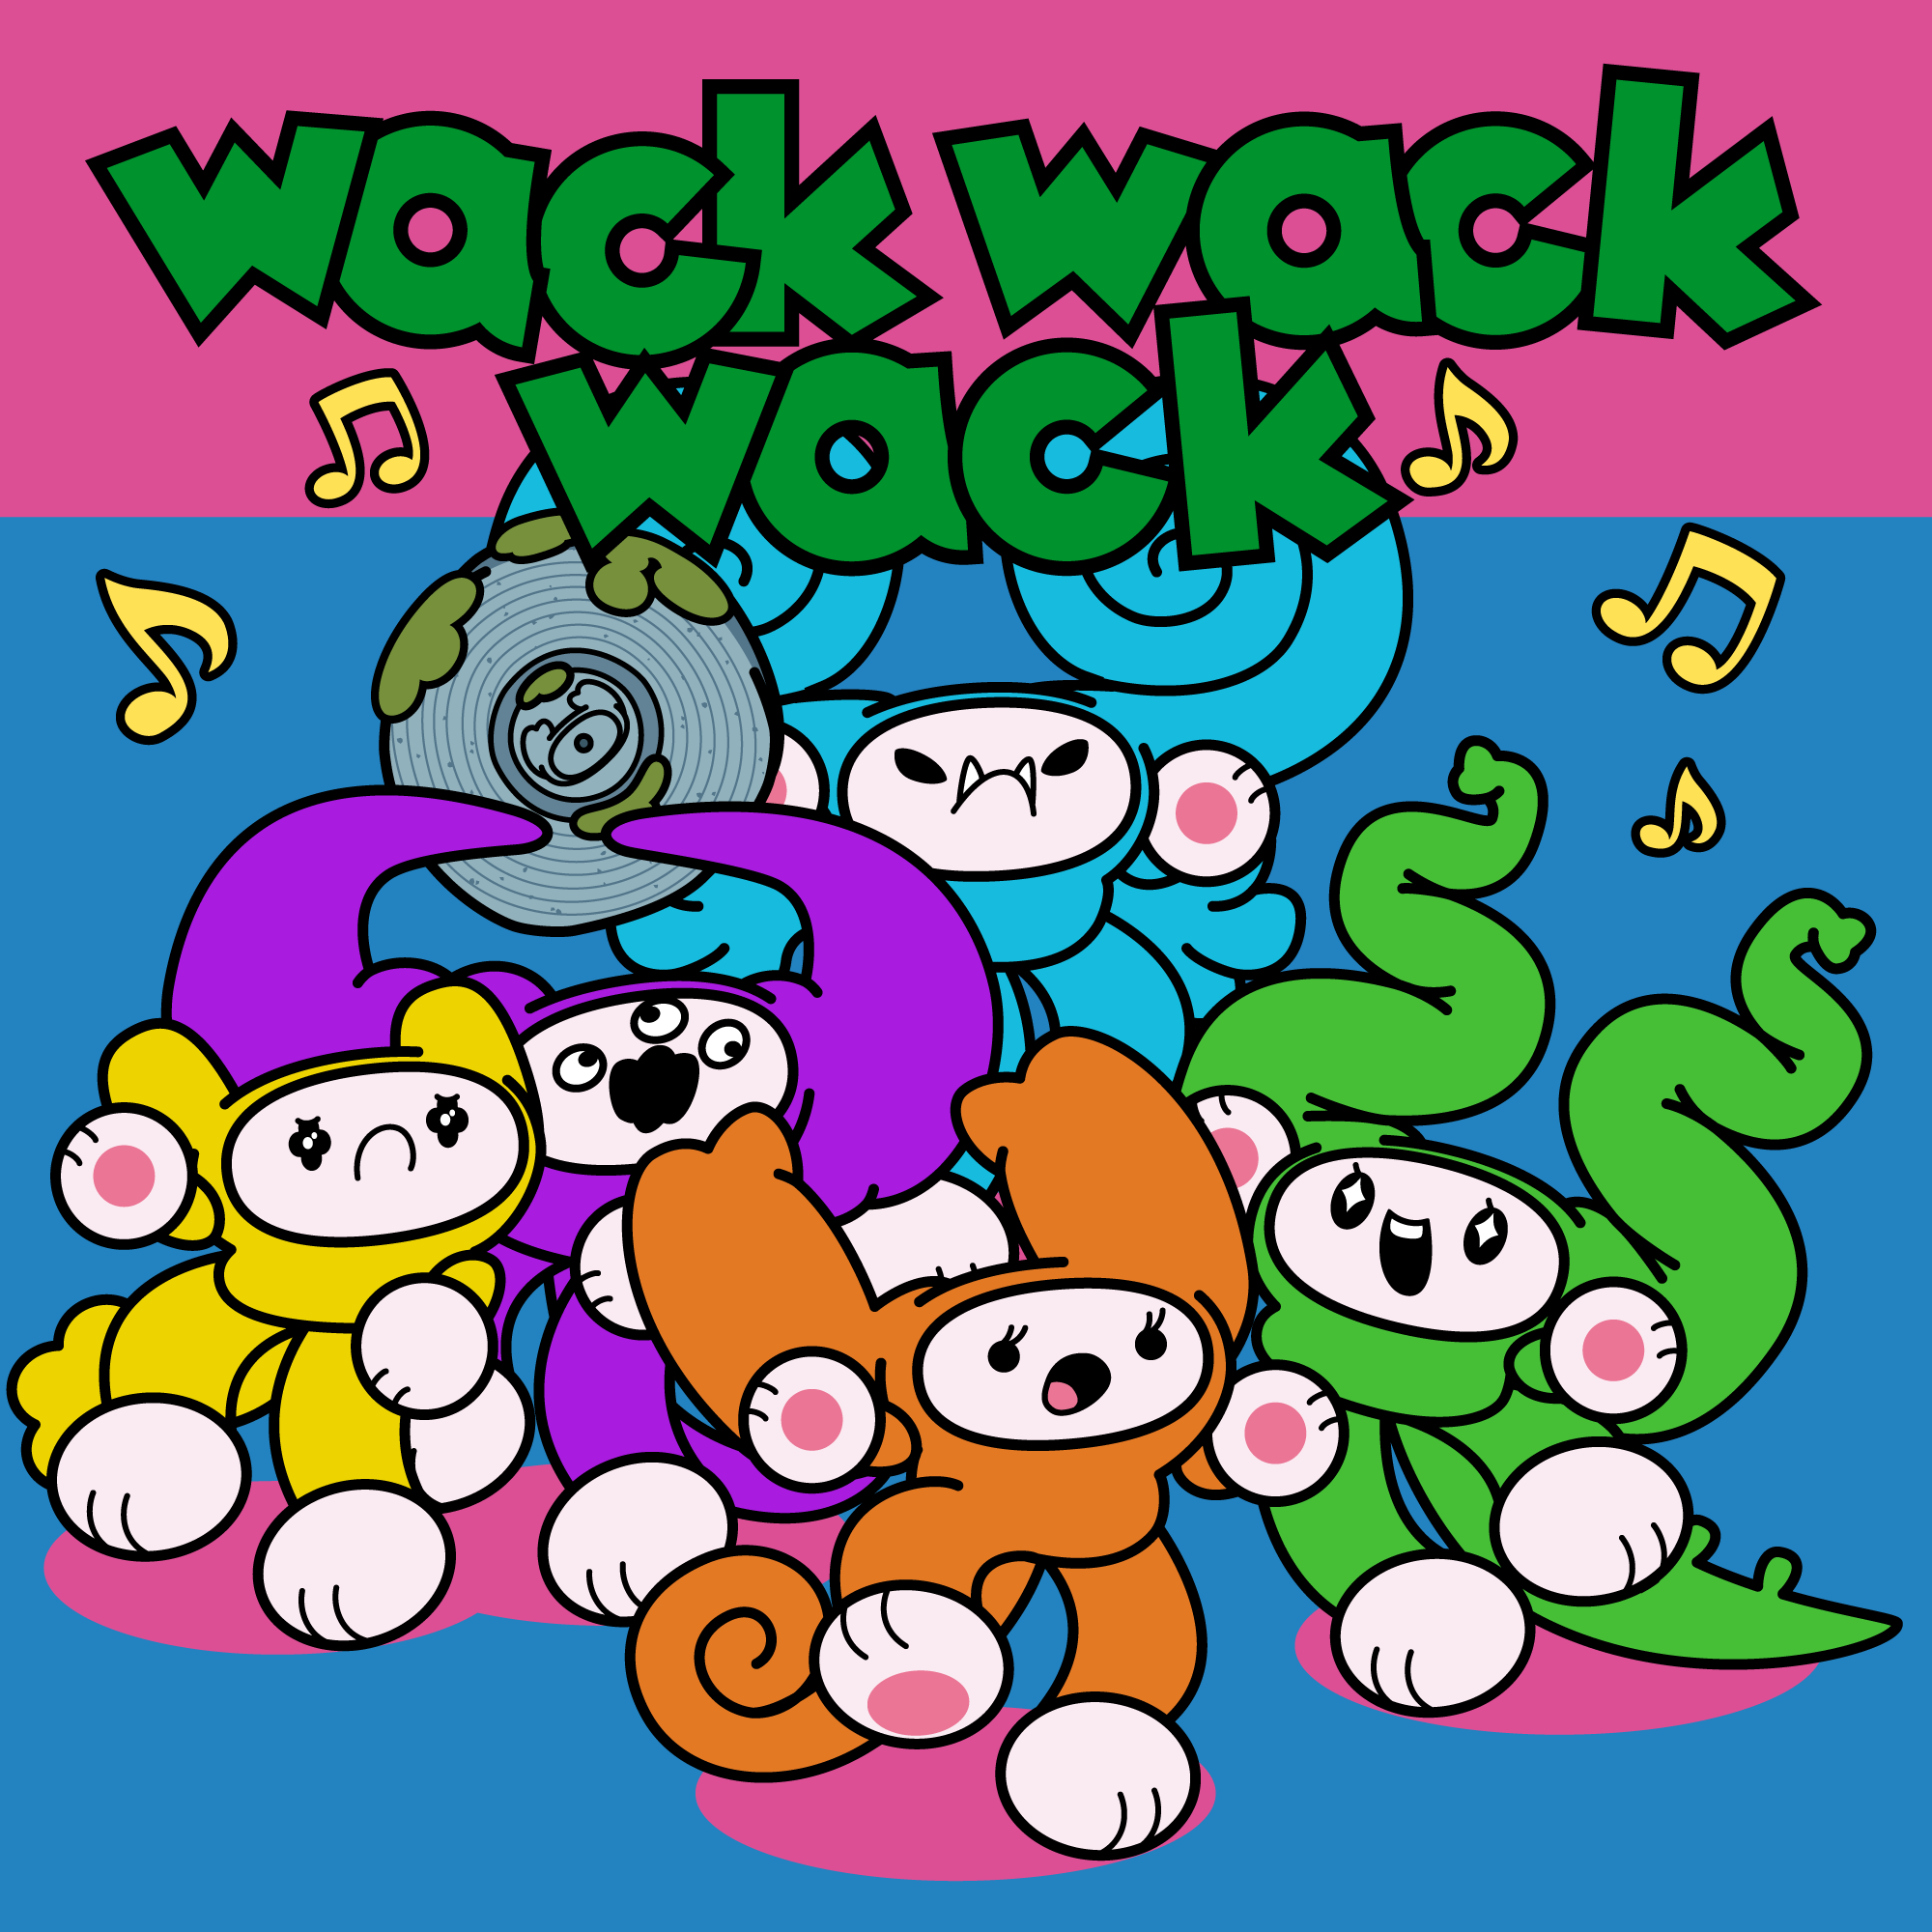 wackwackwack - Fractional musicNFT